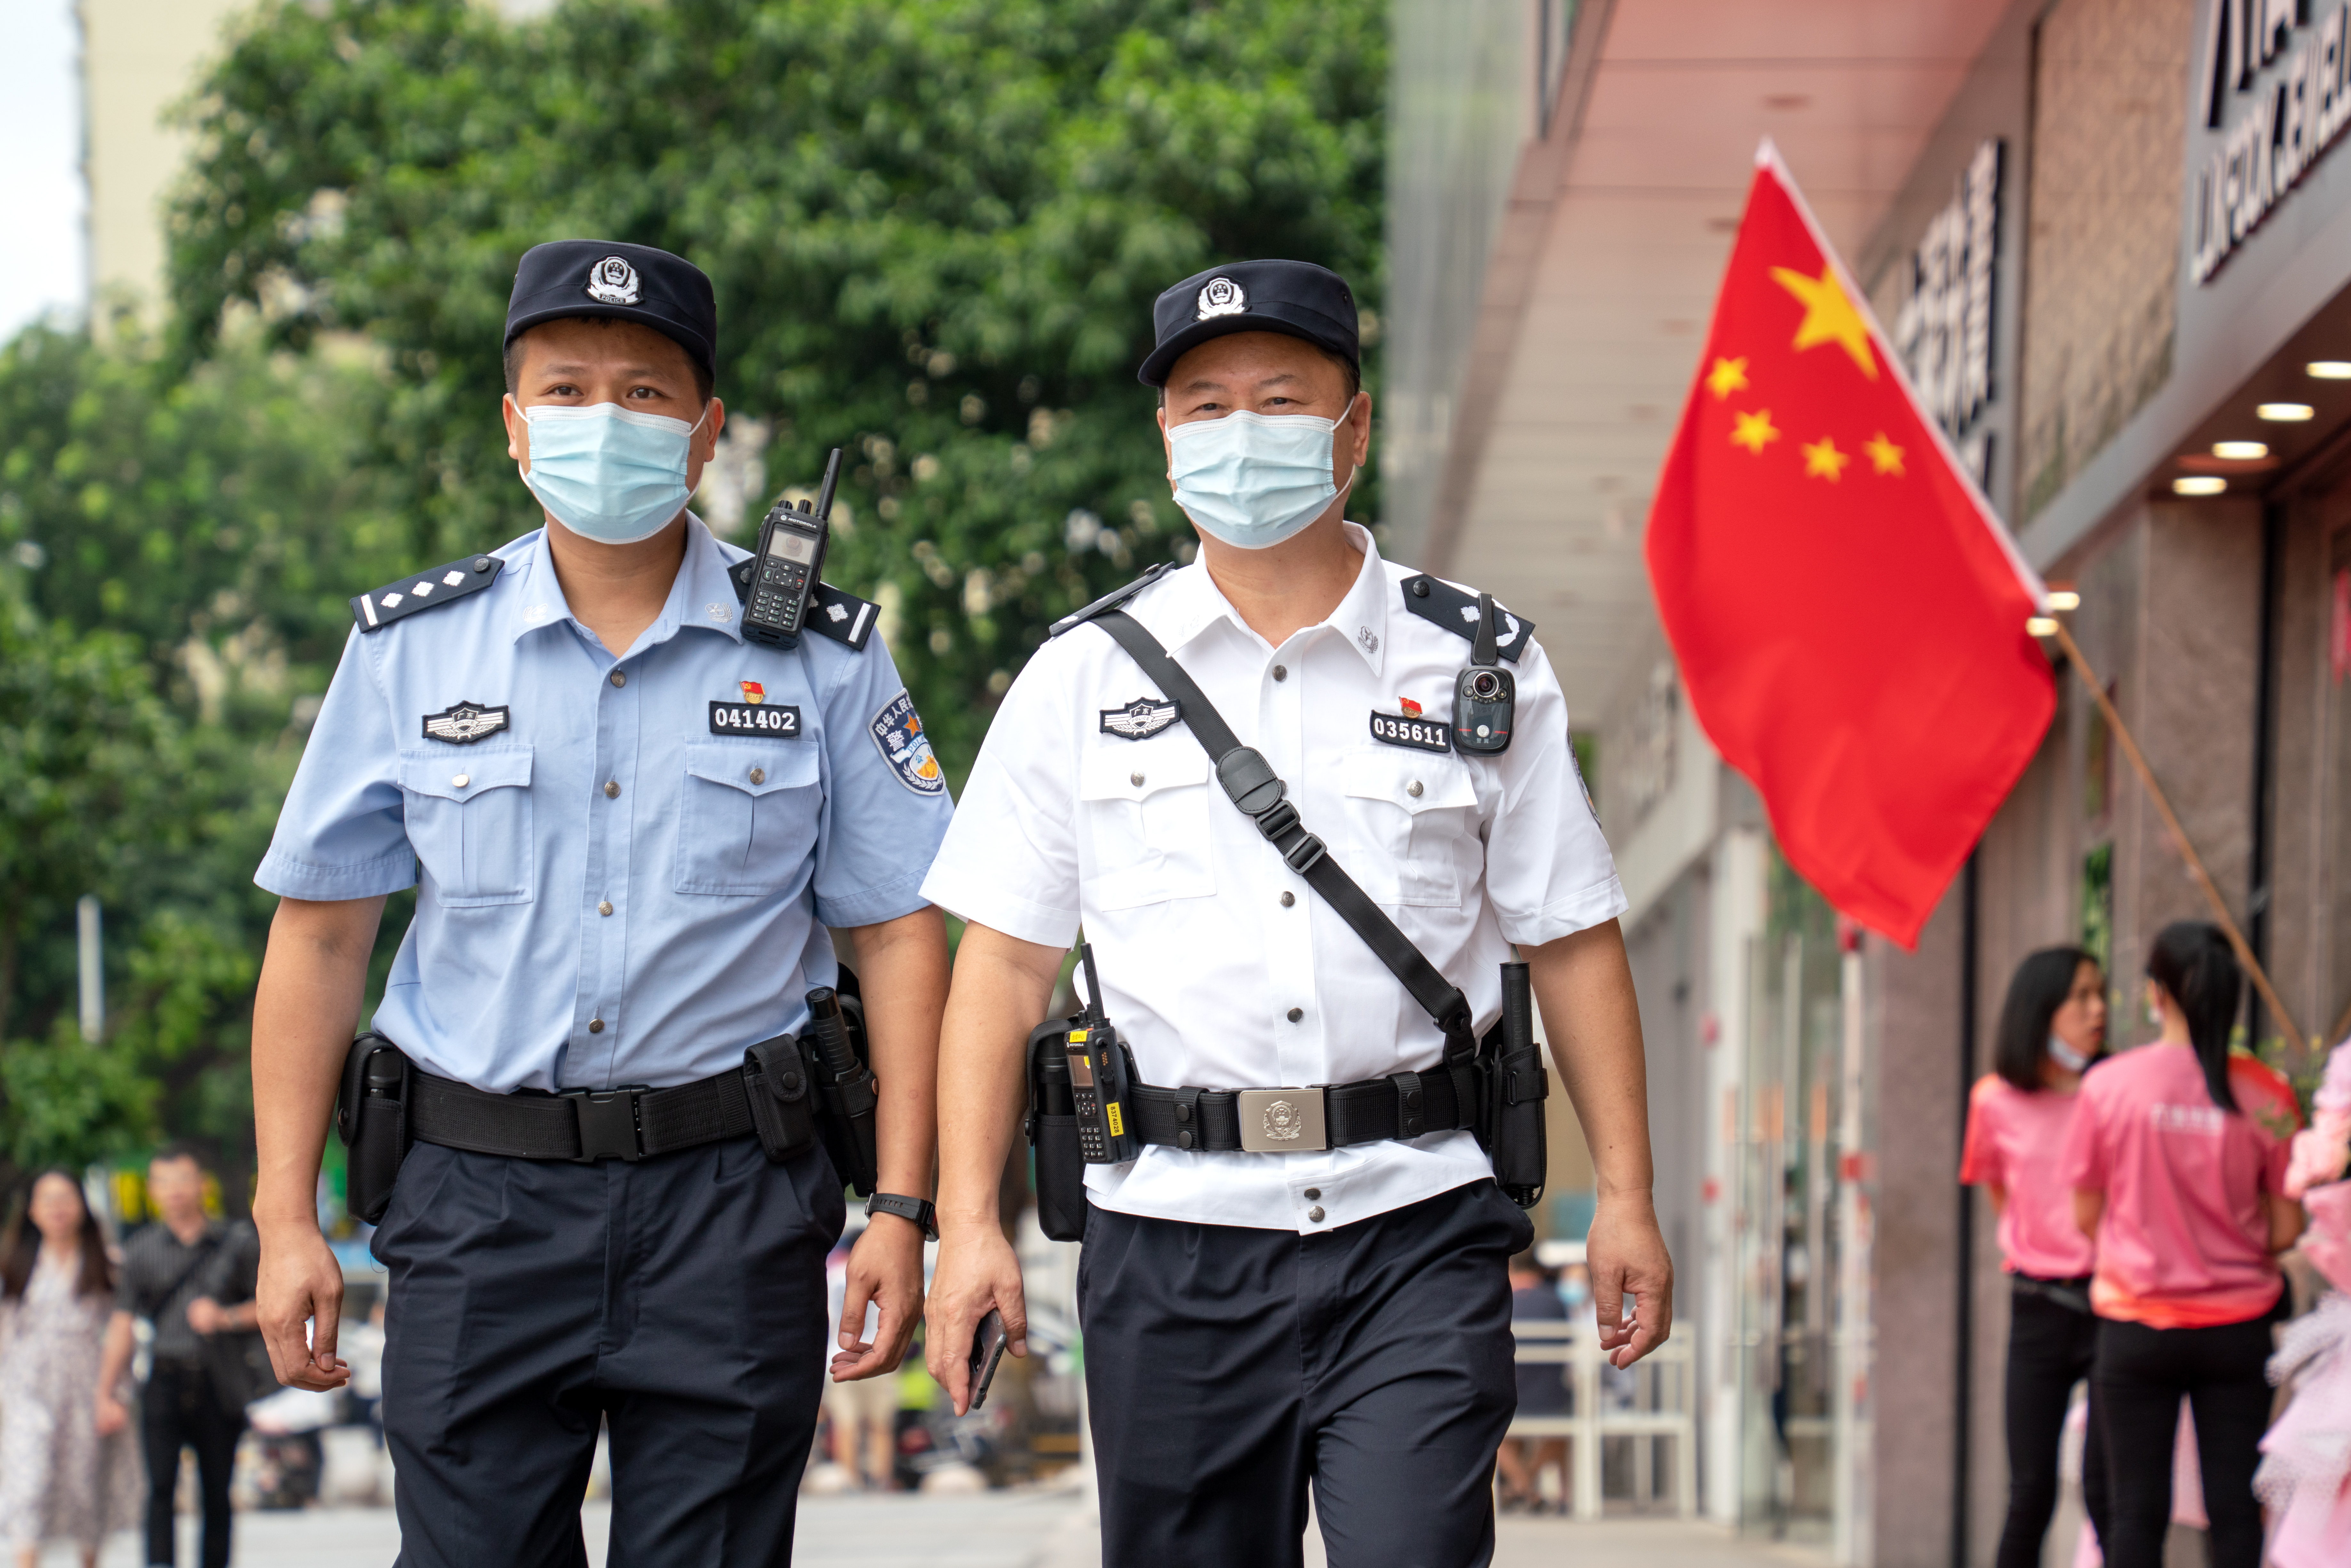 双节假期首日,广州全市社会治安大局平稳有序